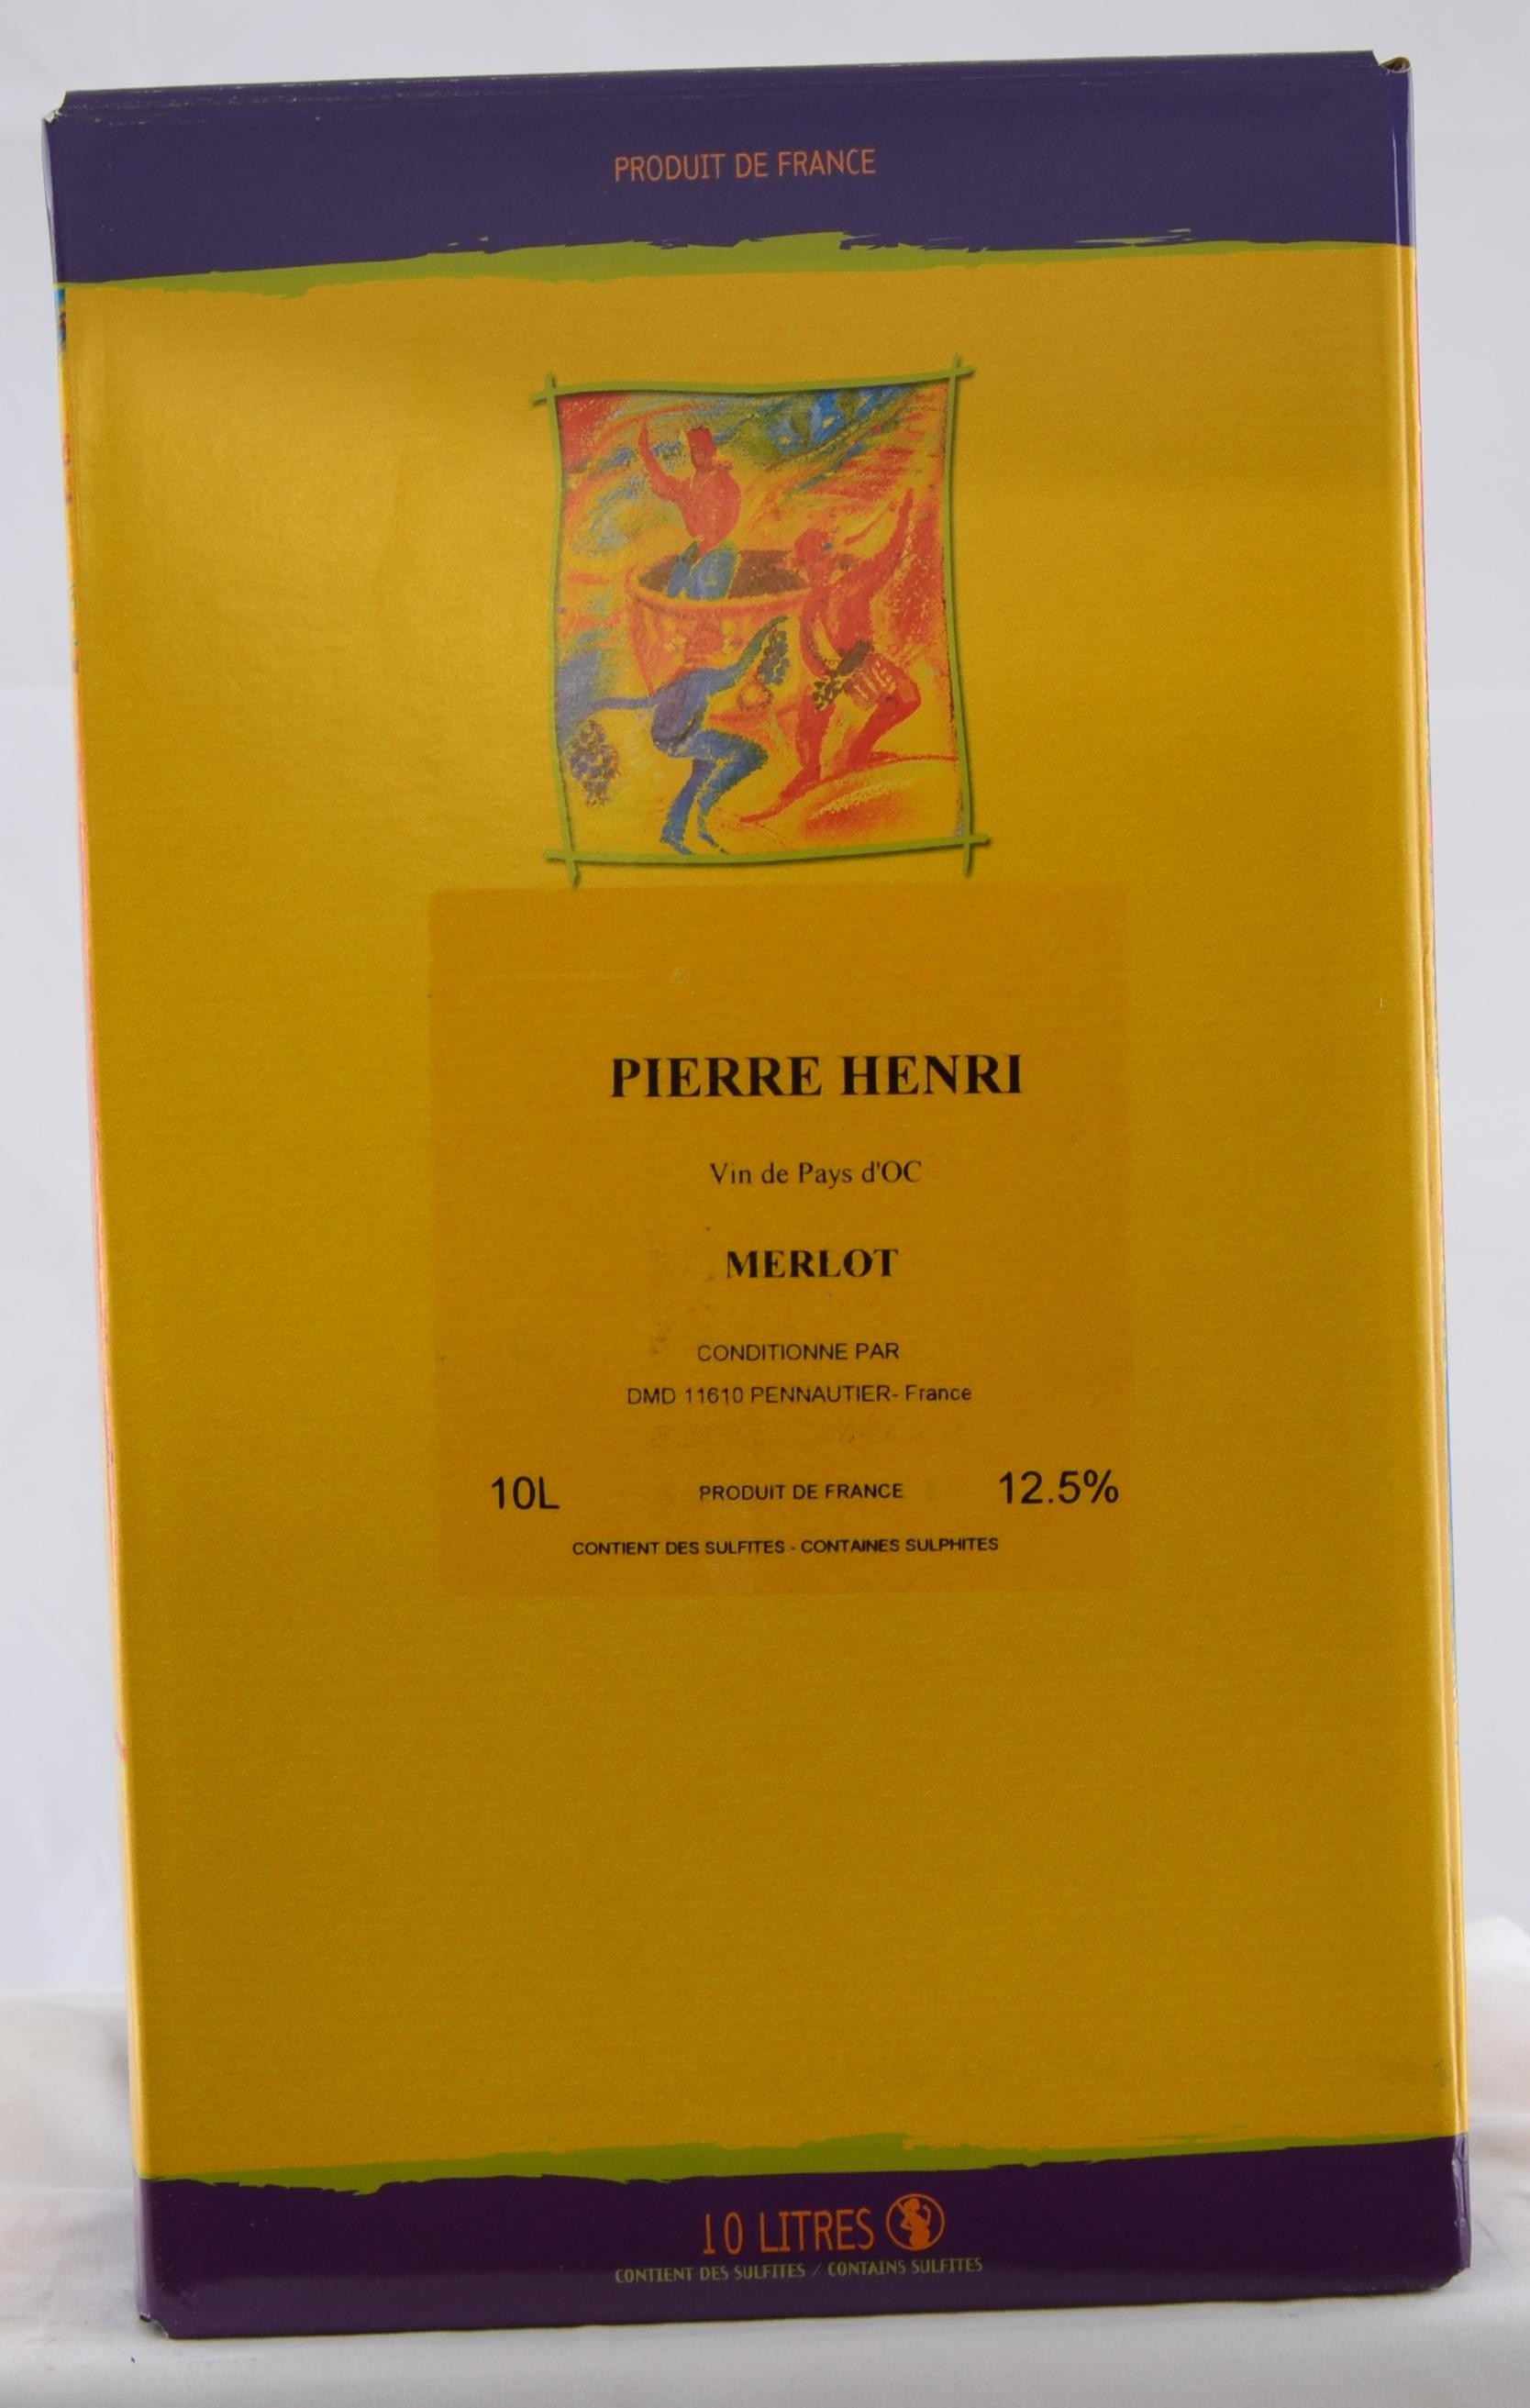 Merlot Pierre Henri - Vin de Pays d'Oc 10L Bag-in-Box